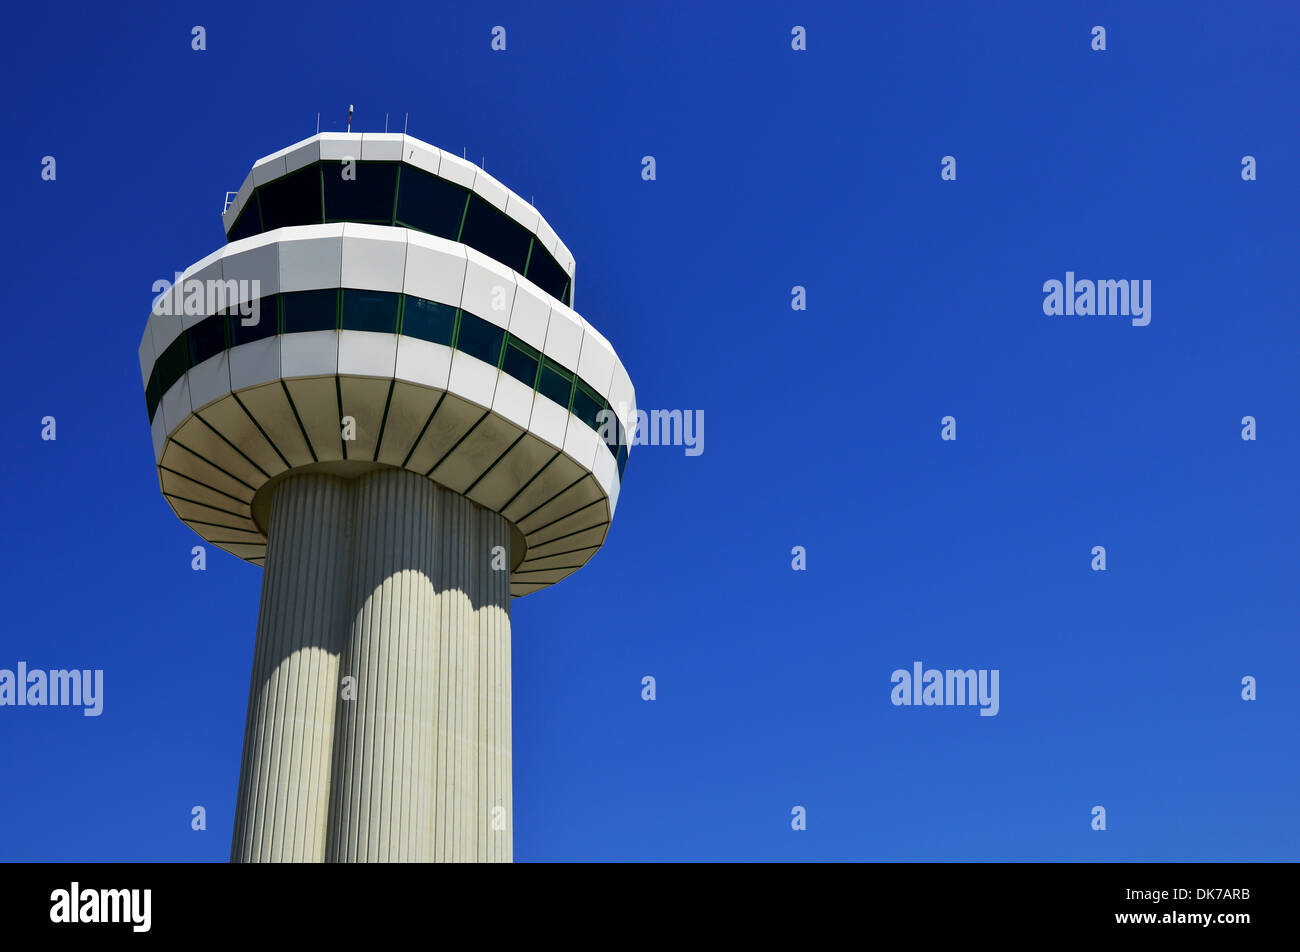 Tour de contrôle tour de contrôle de la circulation aérienne à l'aéroport de Gatwick, Londres, Angleterre, Royaume-Uni Banque D'Images